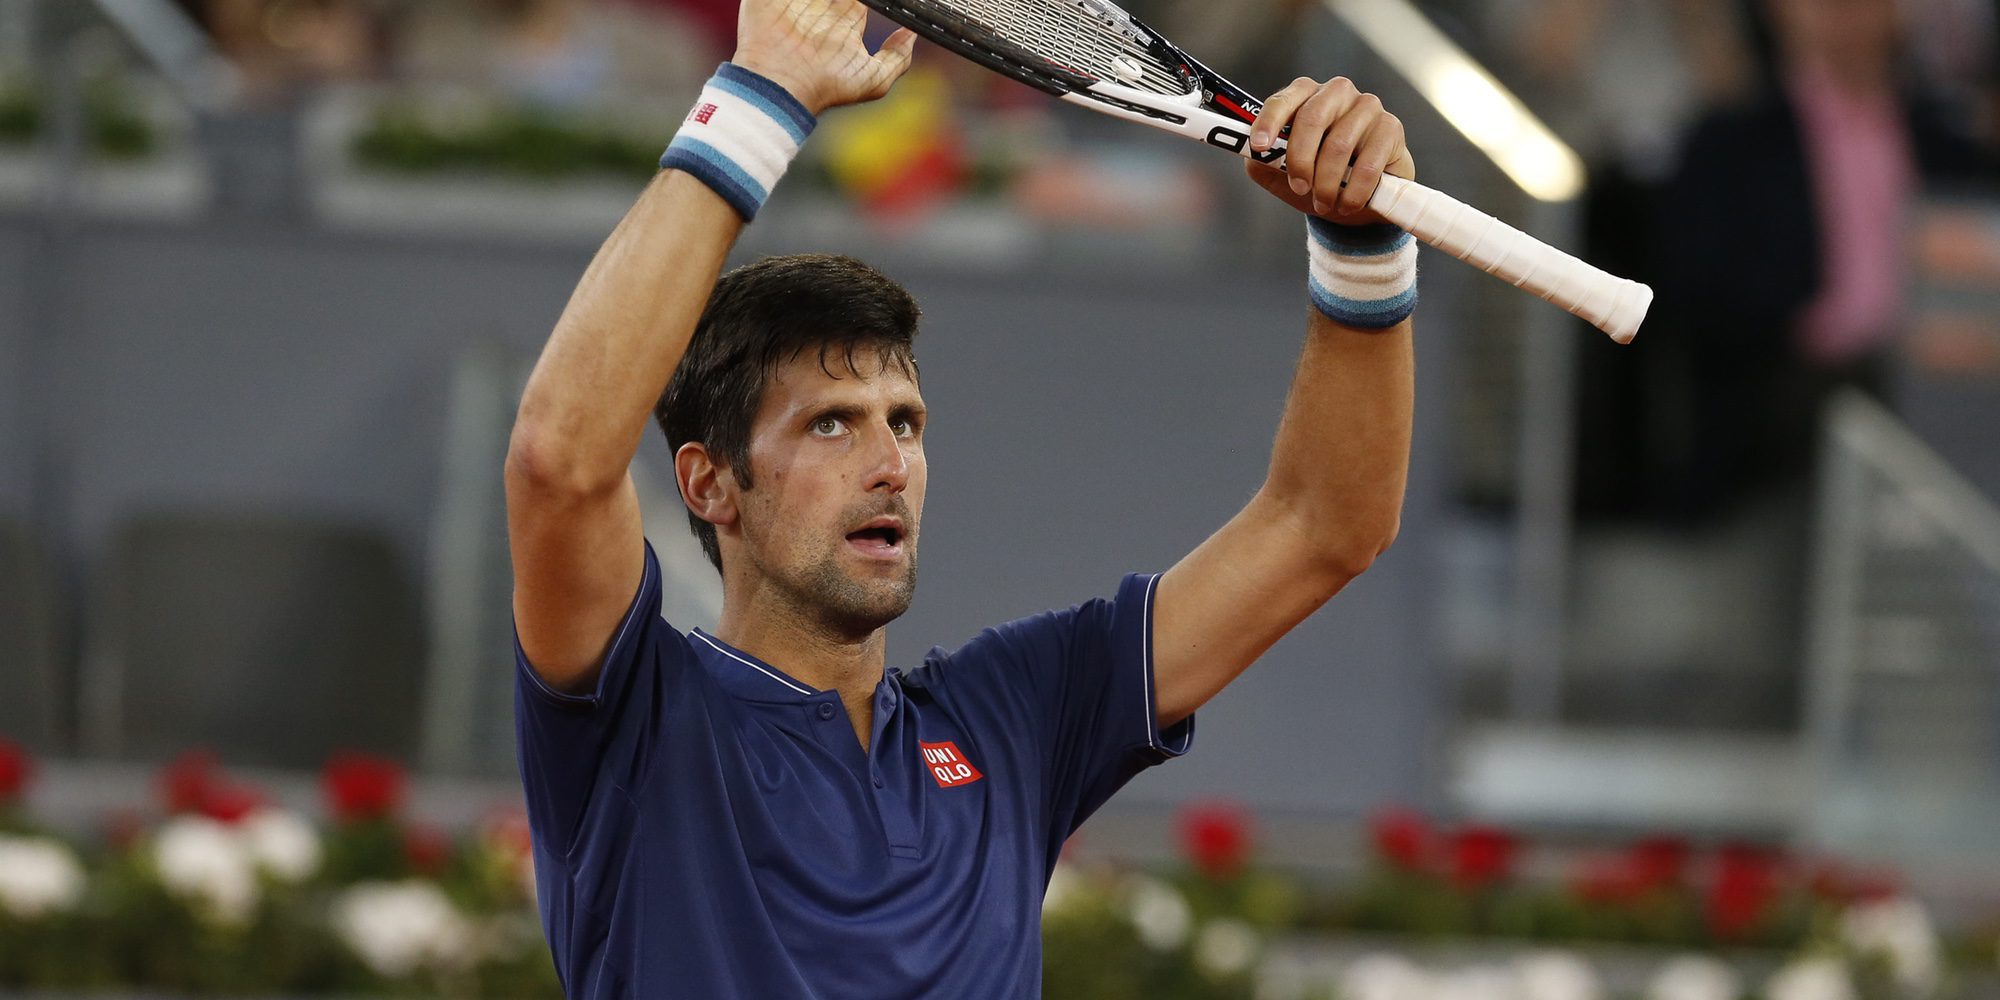 3 momentos clave en la vida de Novak Djokovic